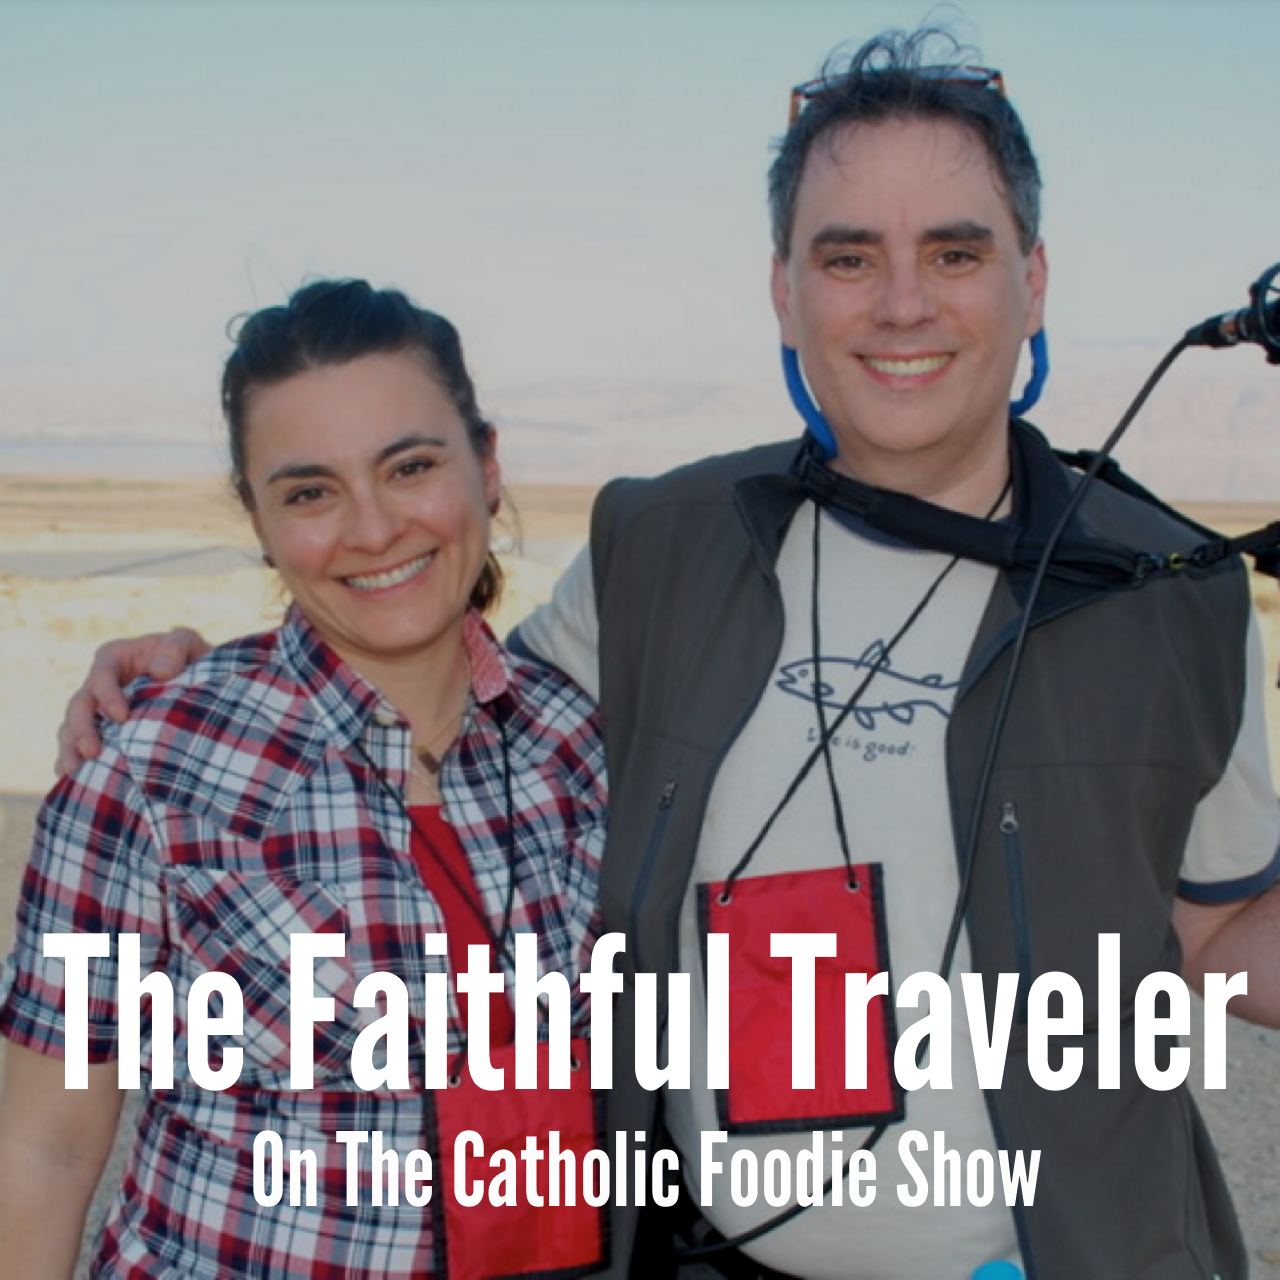 Diana von Glahn, The Faith Traveler on The Catholic Foodie Show